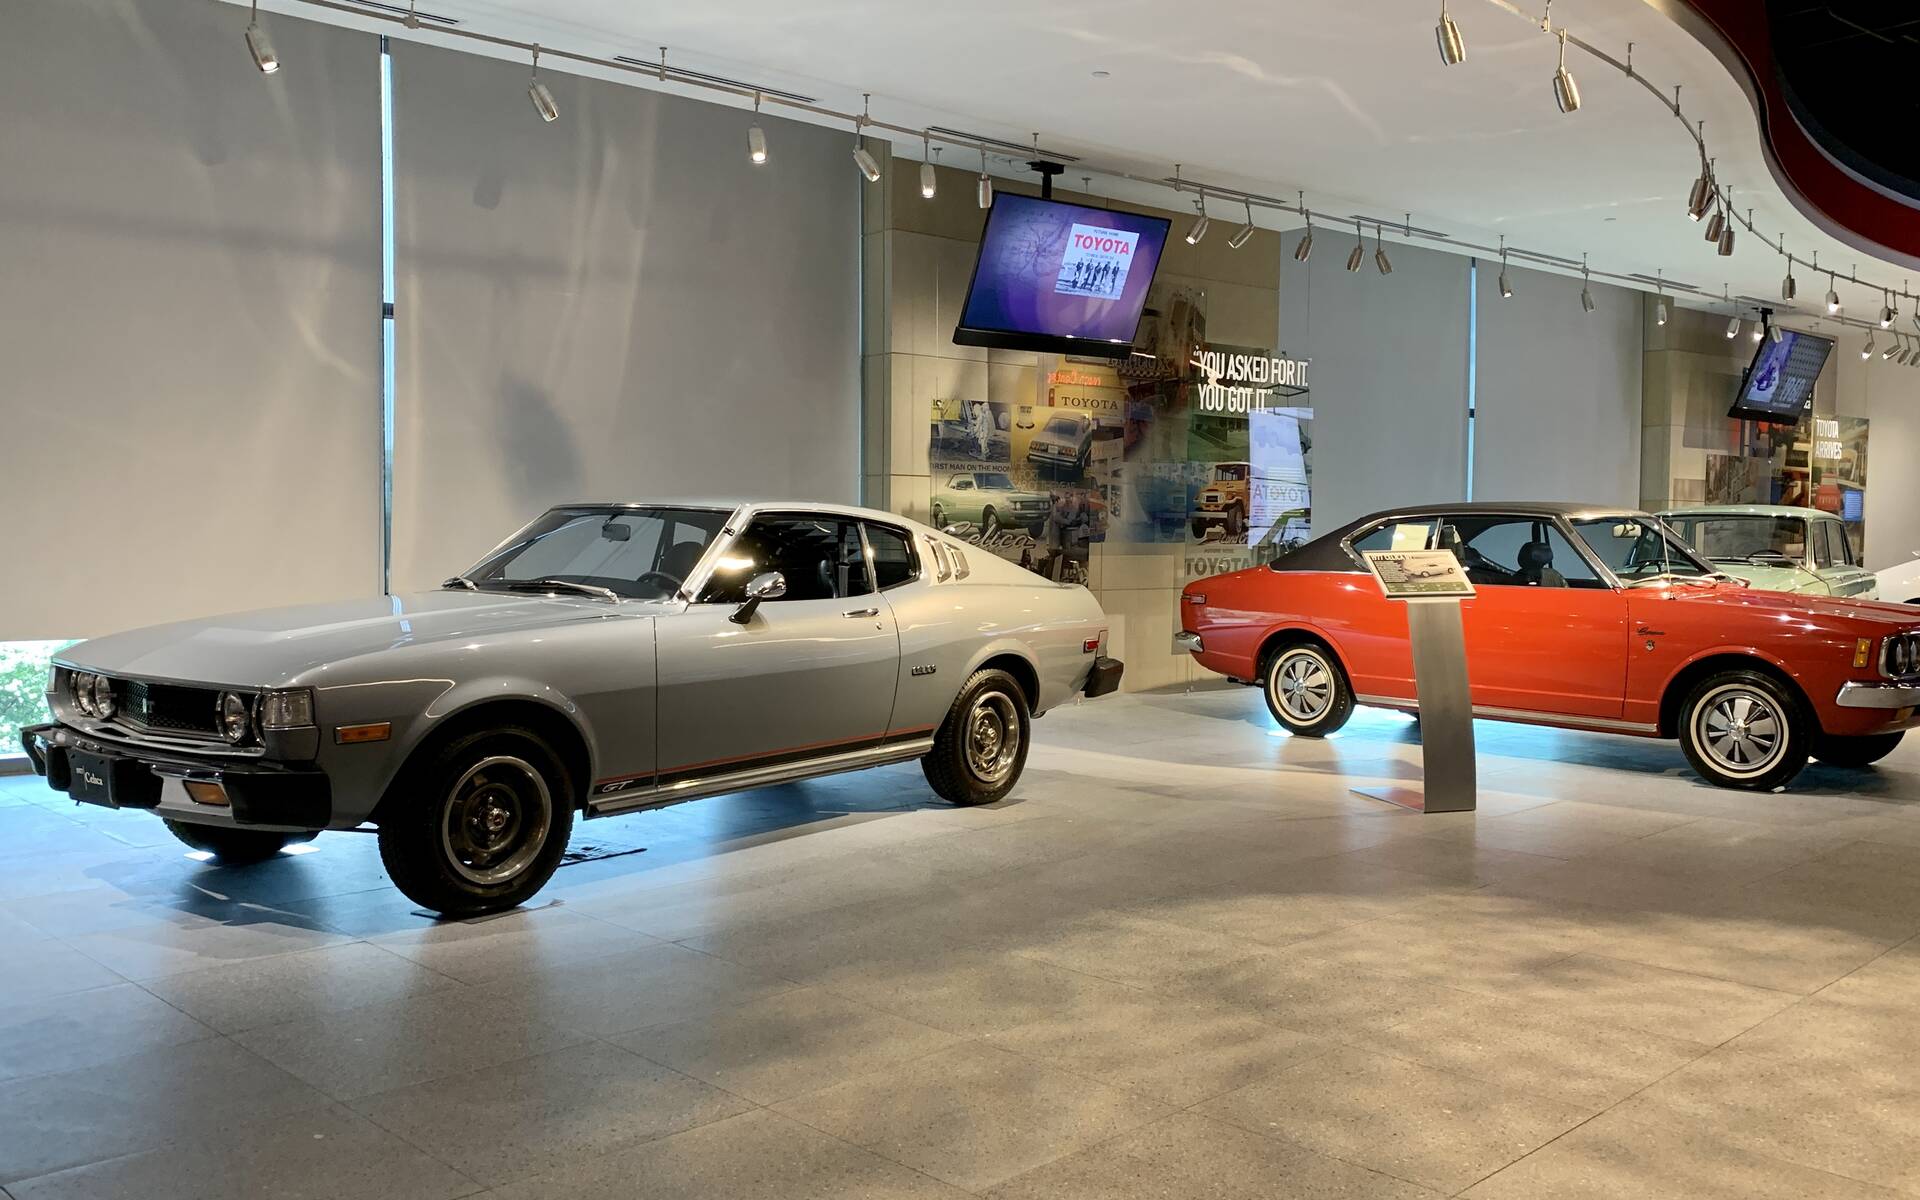 En photos : les trésors du musée de Toyota au Texas 529635-photos-les-tresors-du-musee-de-toyota-au-texas